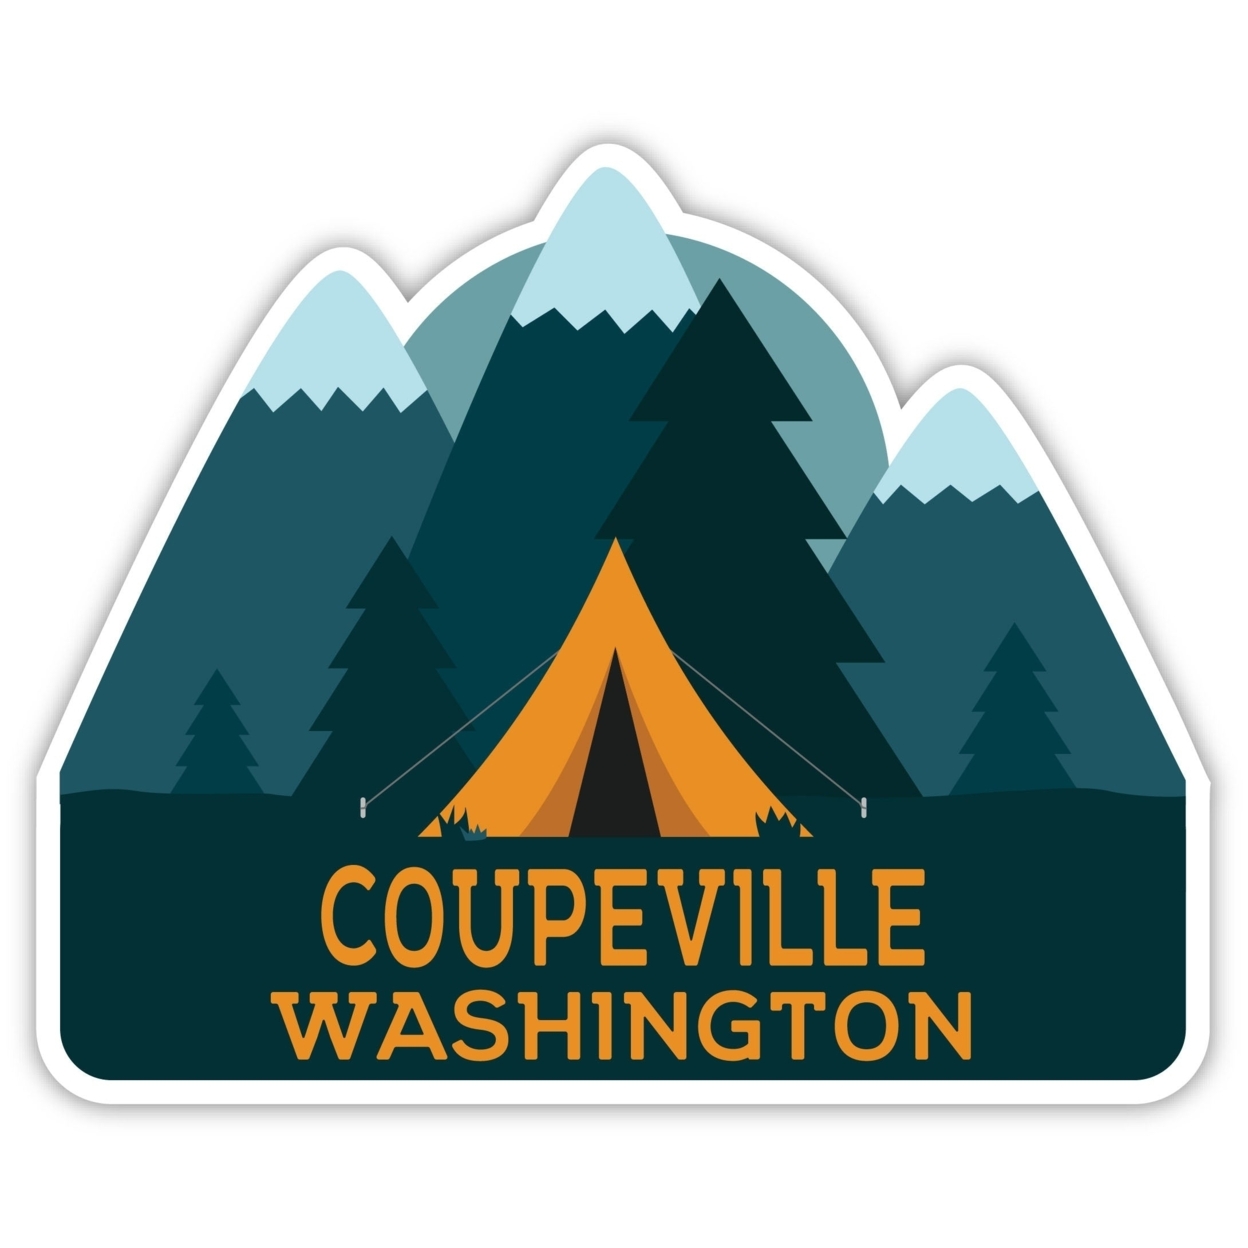 Coupeville Washington Souvenir Decorative Stickers (Choose Theme And Size) - Single Unit, 10-Inch, Tent